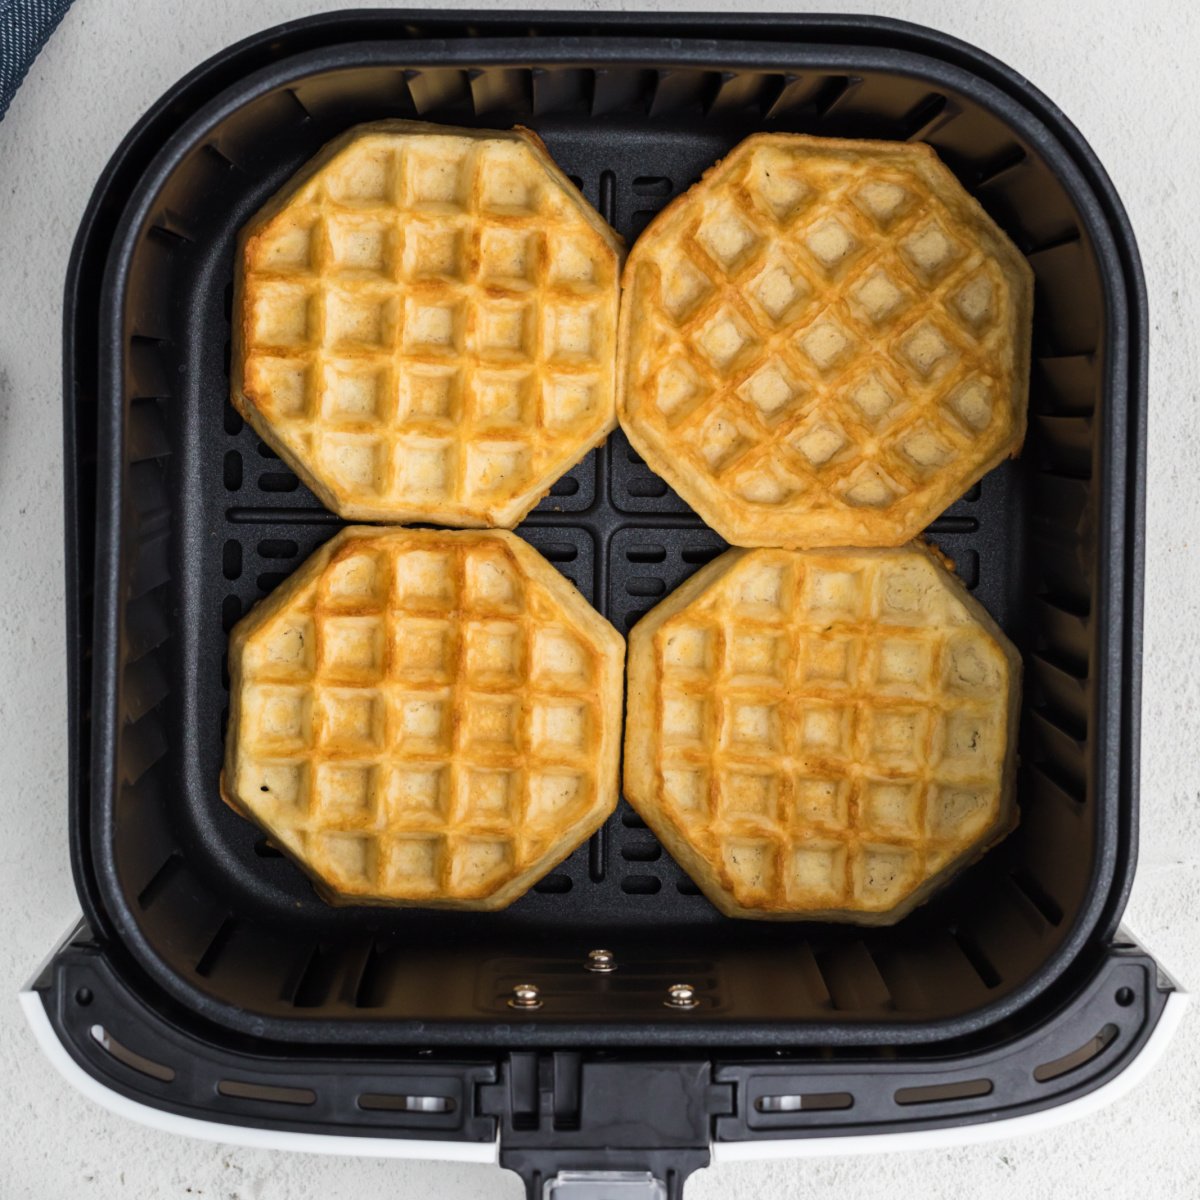 Frozen Waffles in Air Fryer - Air Frying Foodie